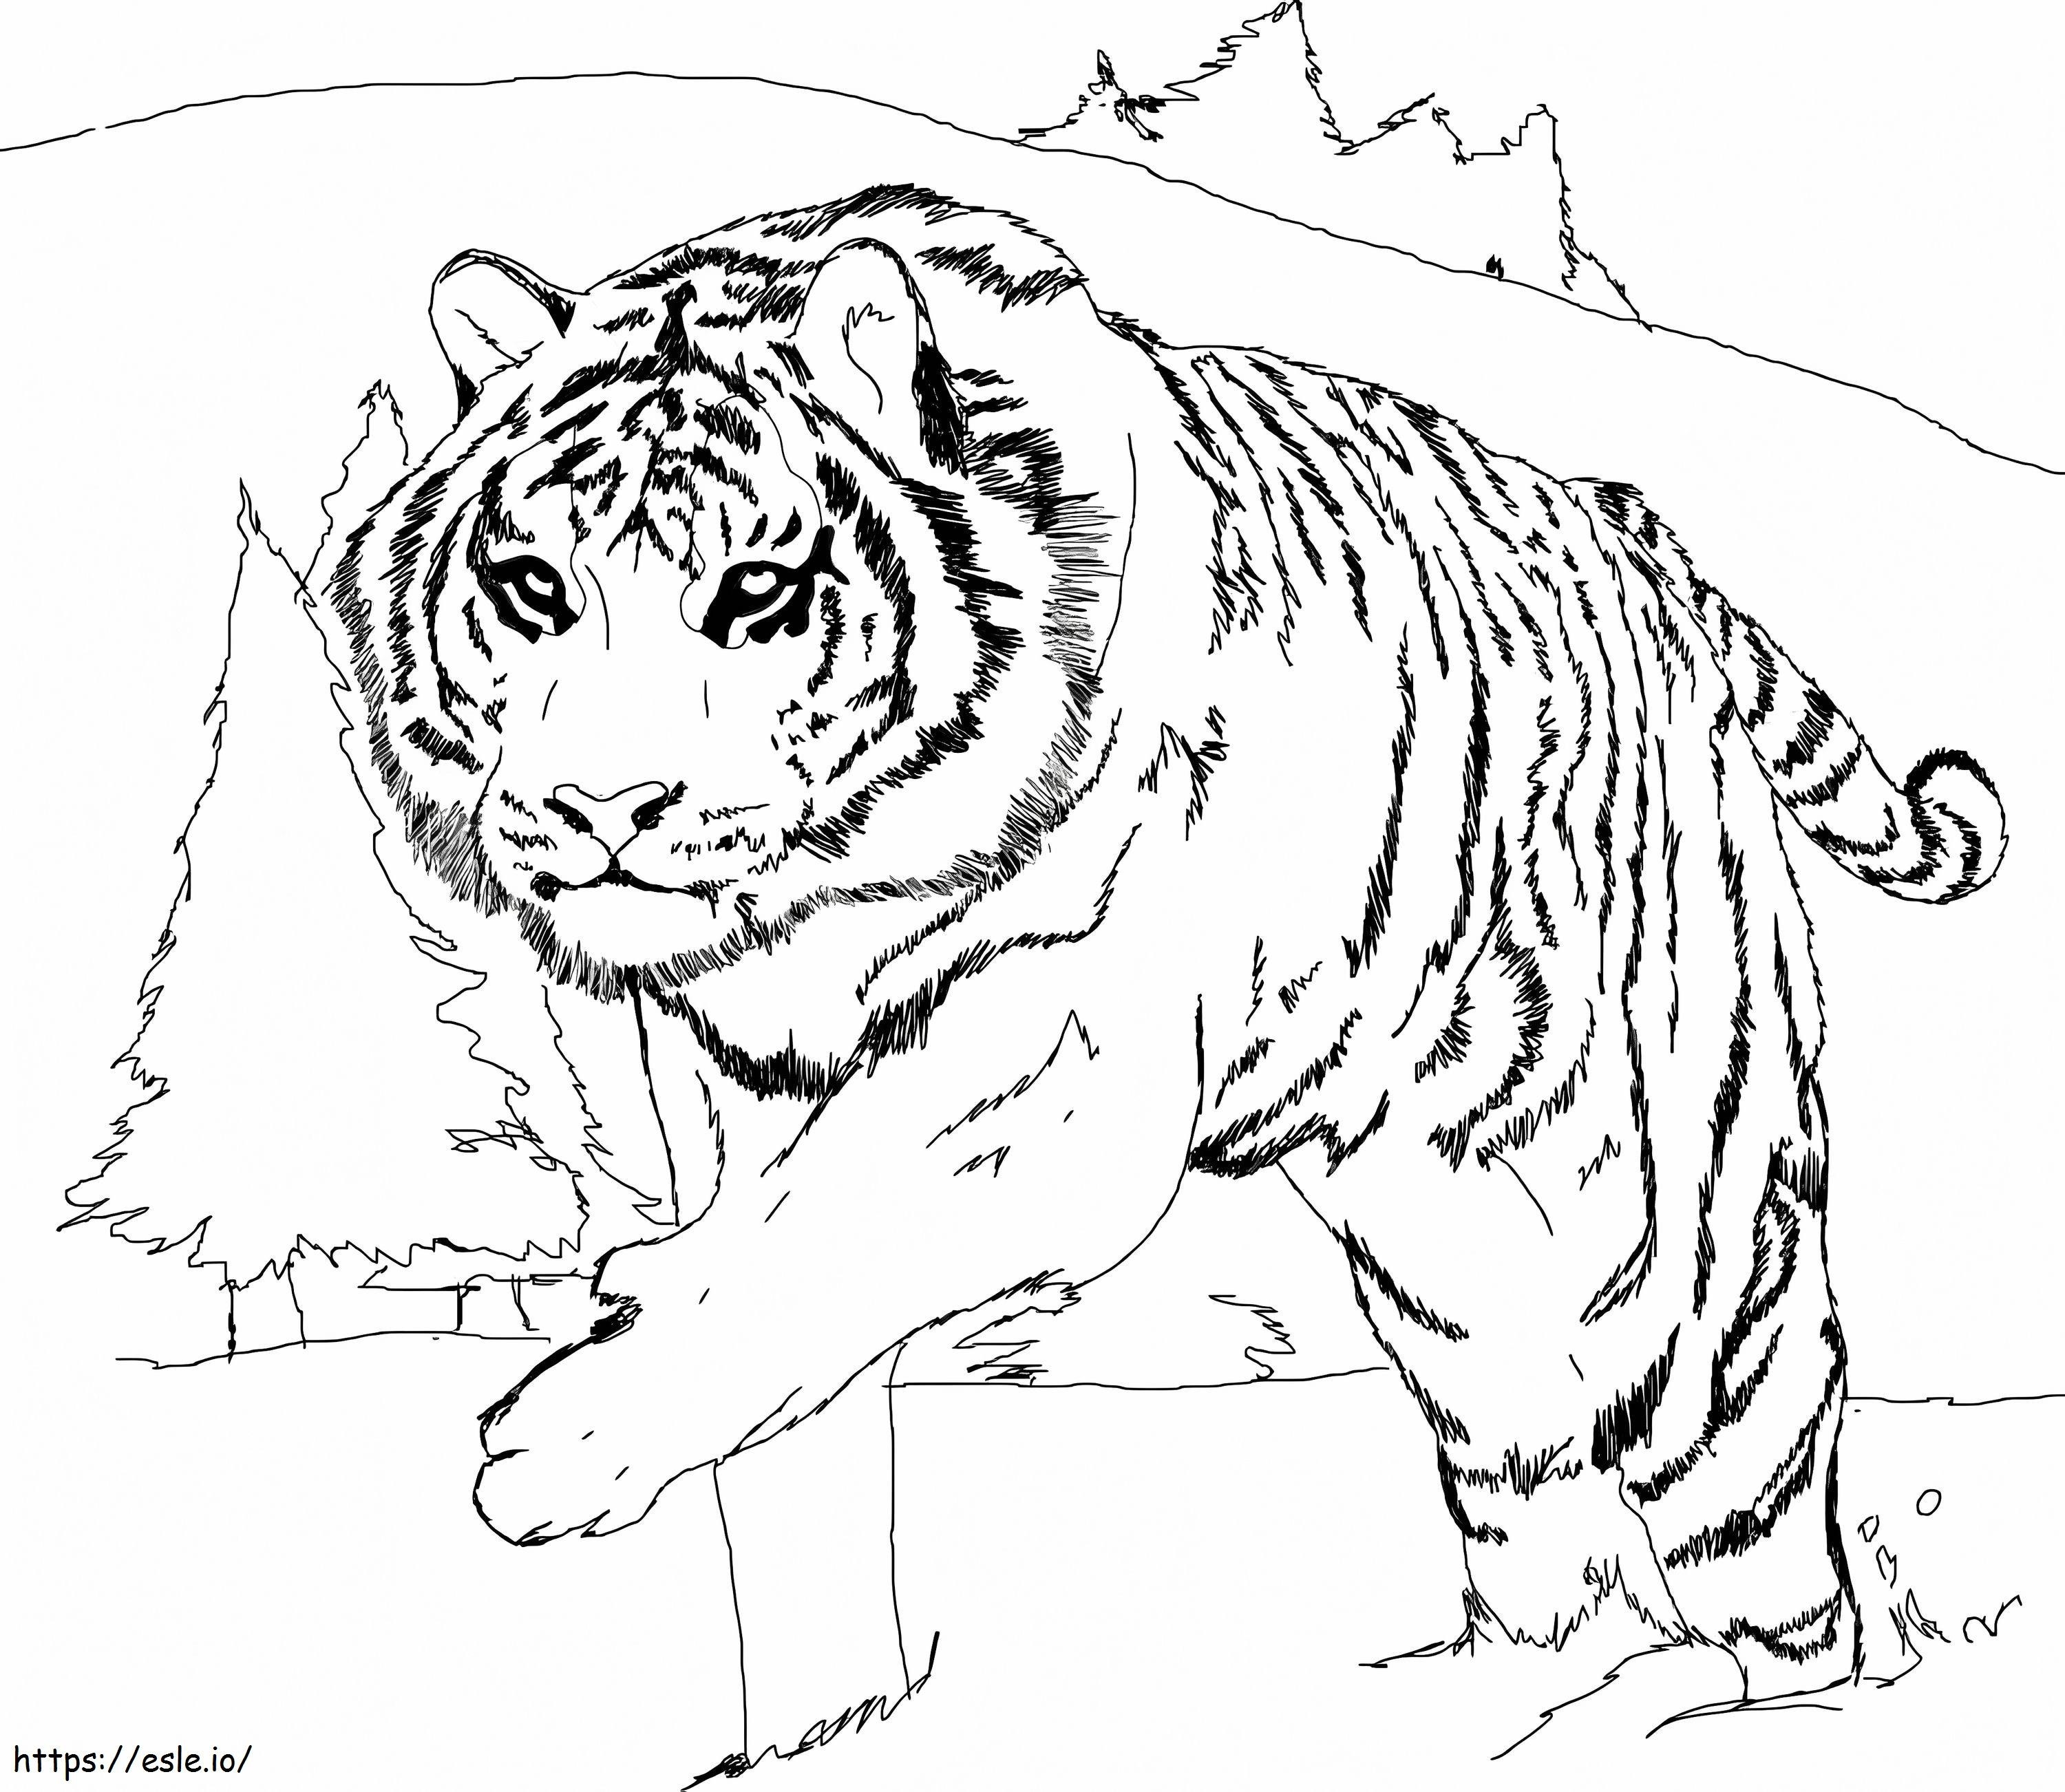 Tigre branco para colorir